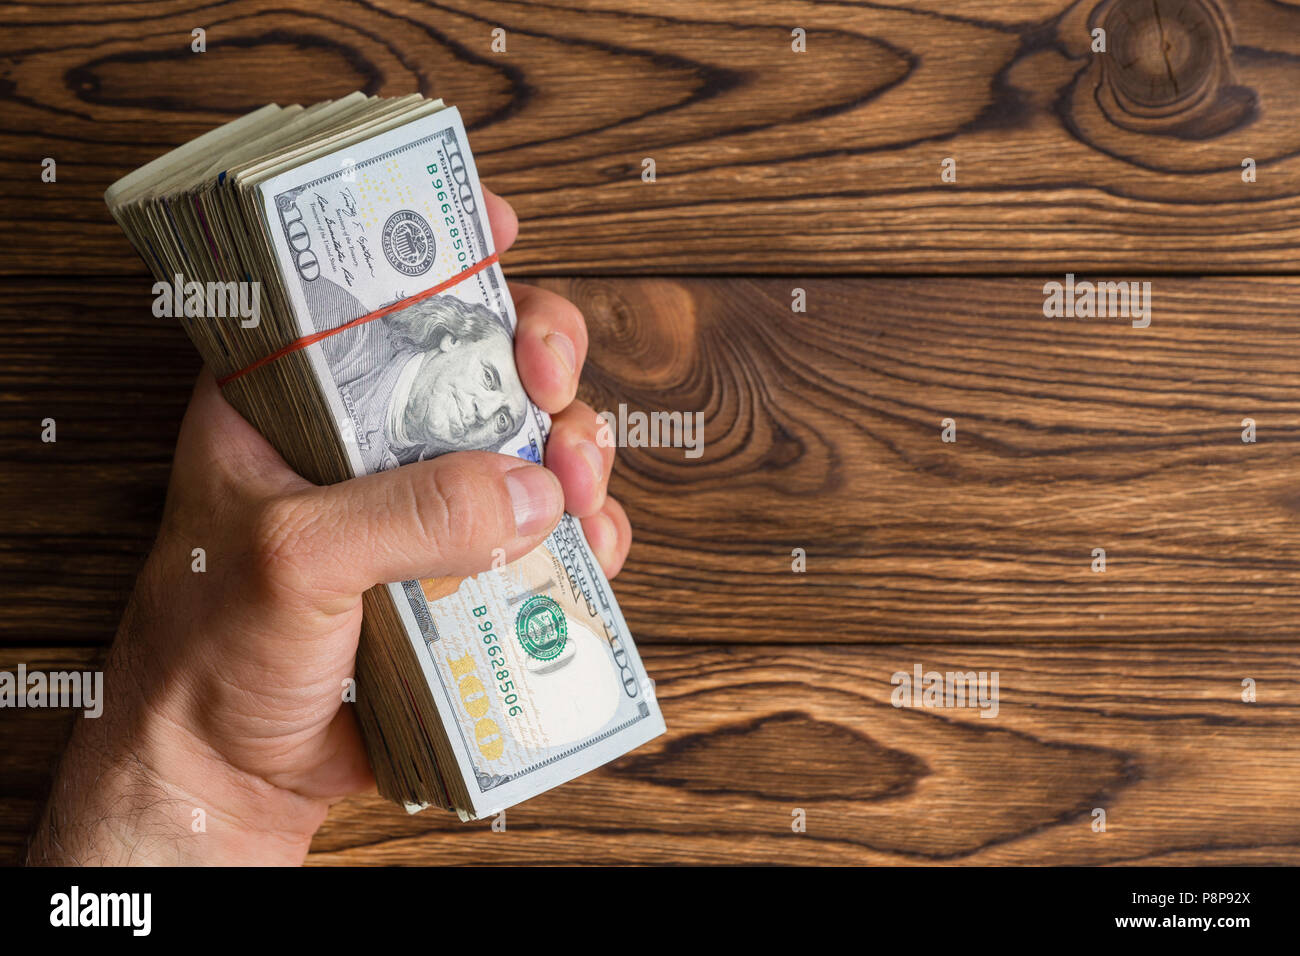 La préhension de l'homme une épaisse pile de 100 dollar bills ou Benjamins dans sa main sur un fond de bois rustique with copy space Banque D'Images